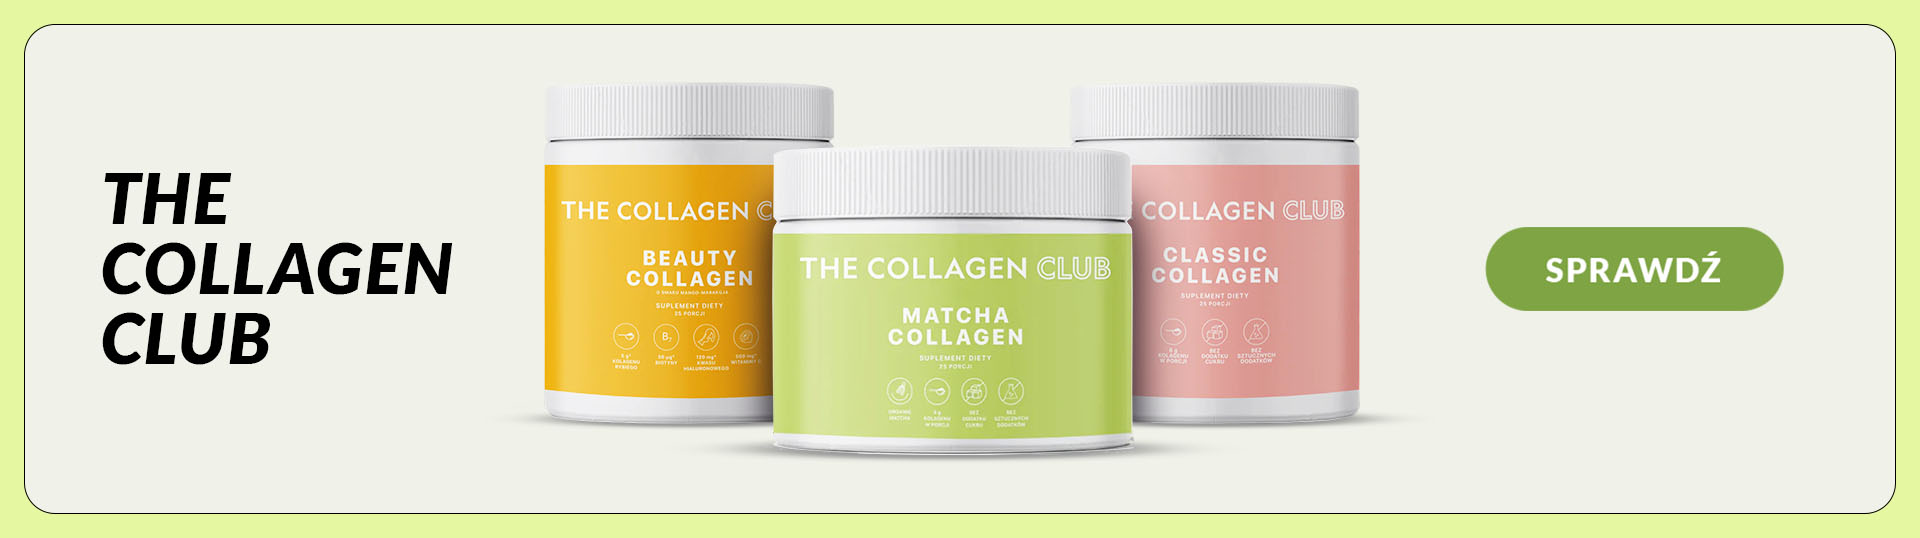 The-Collagen-Club-desktop